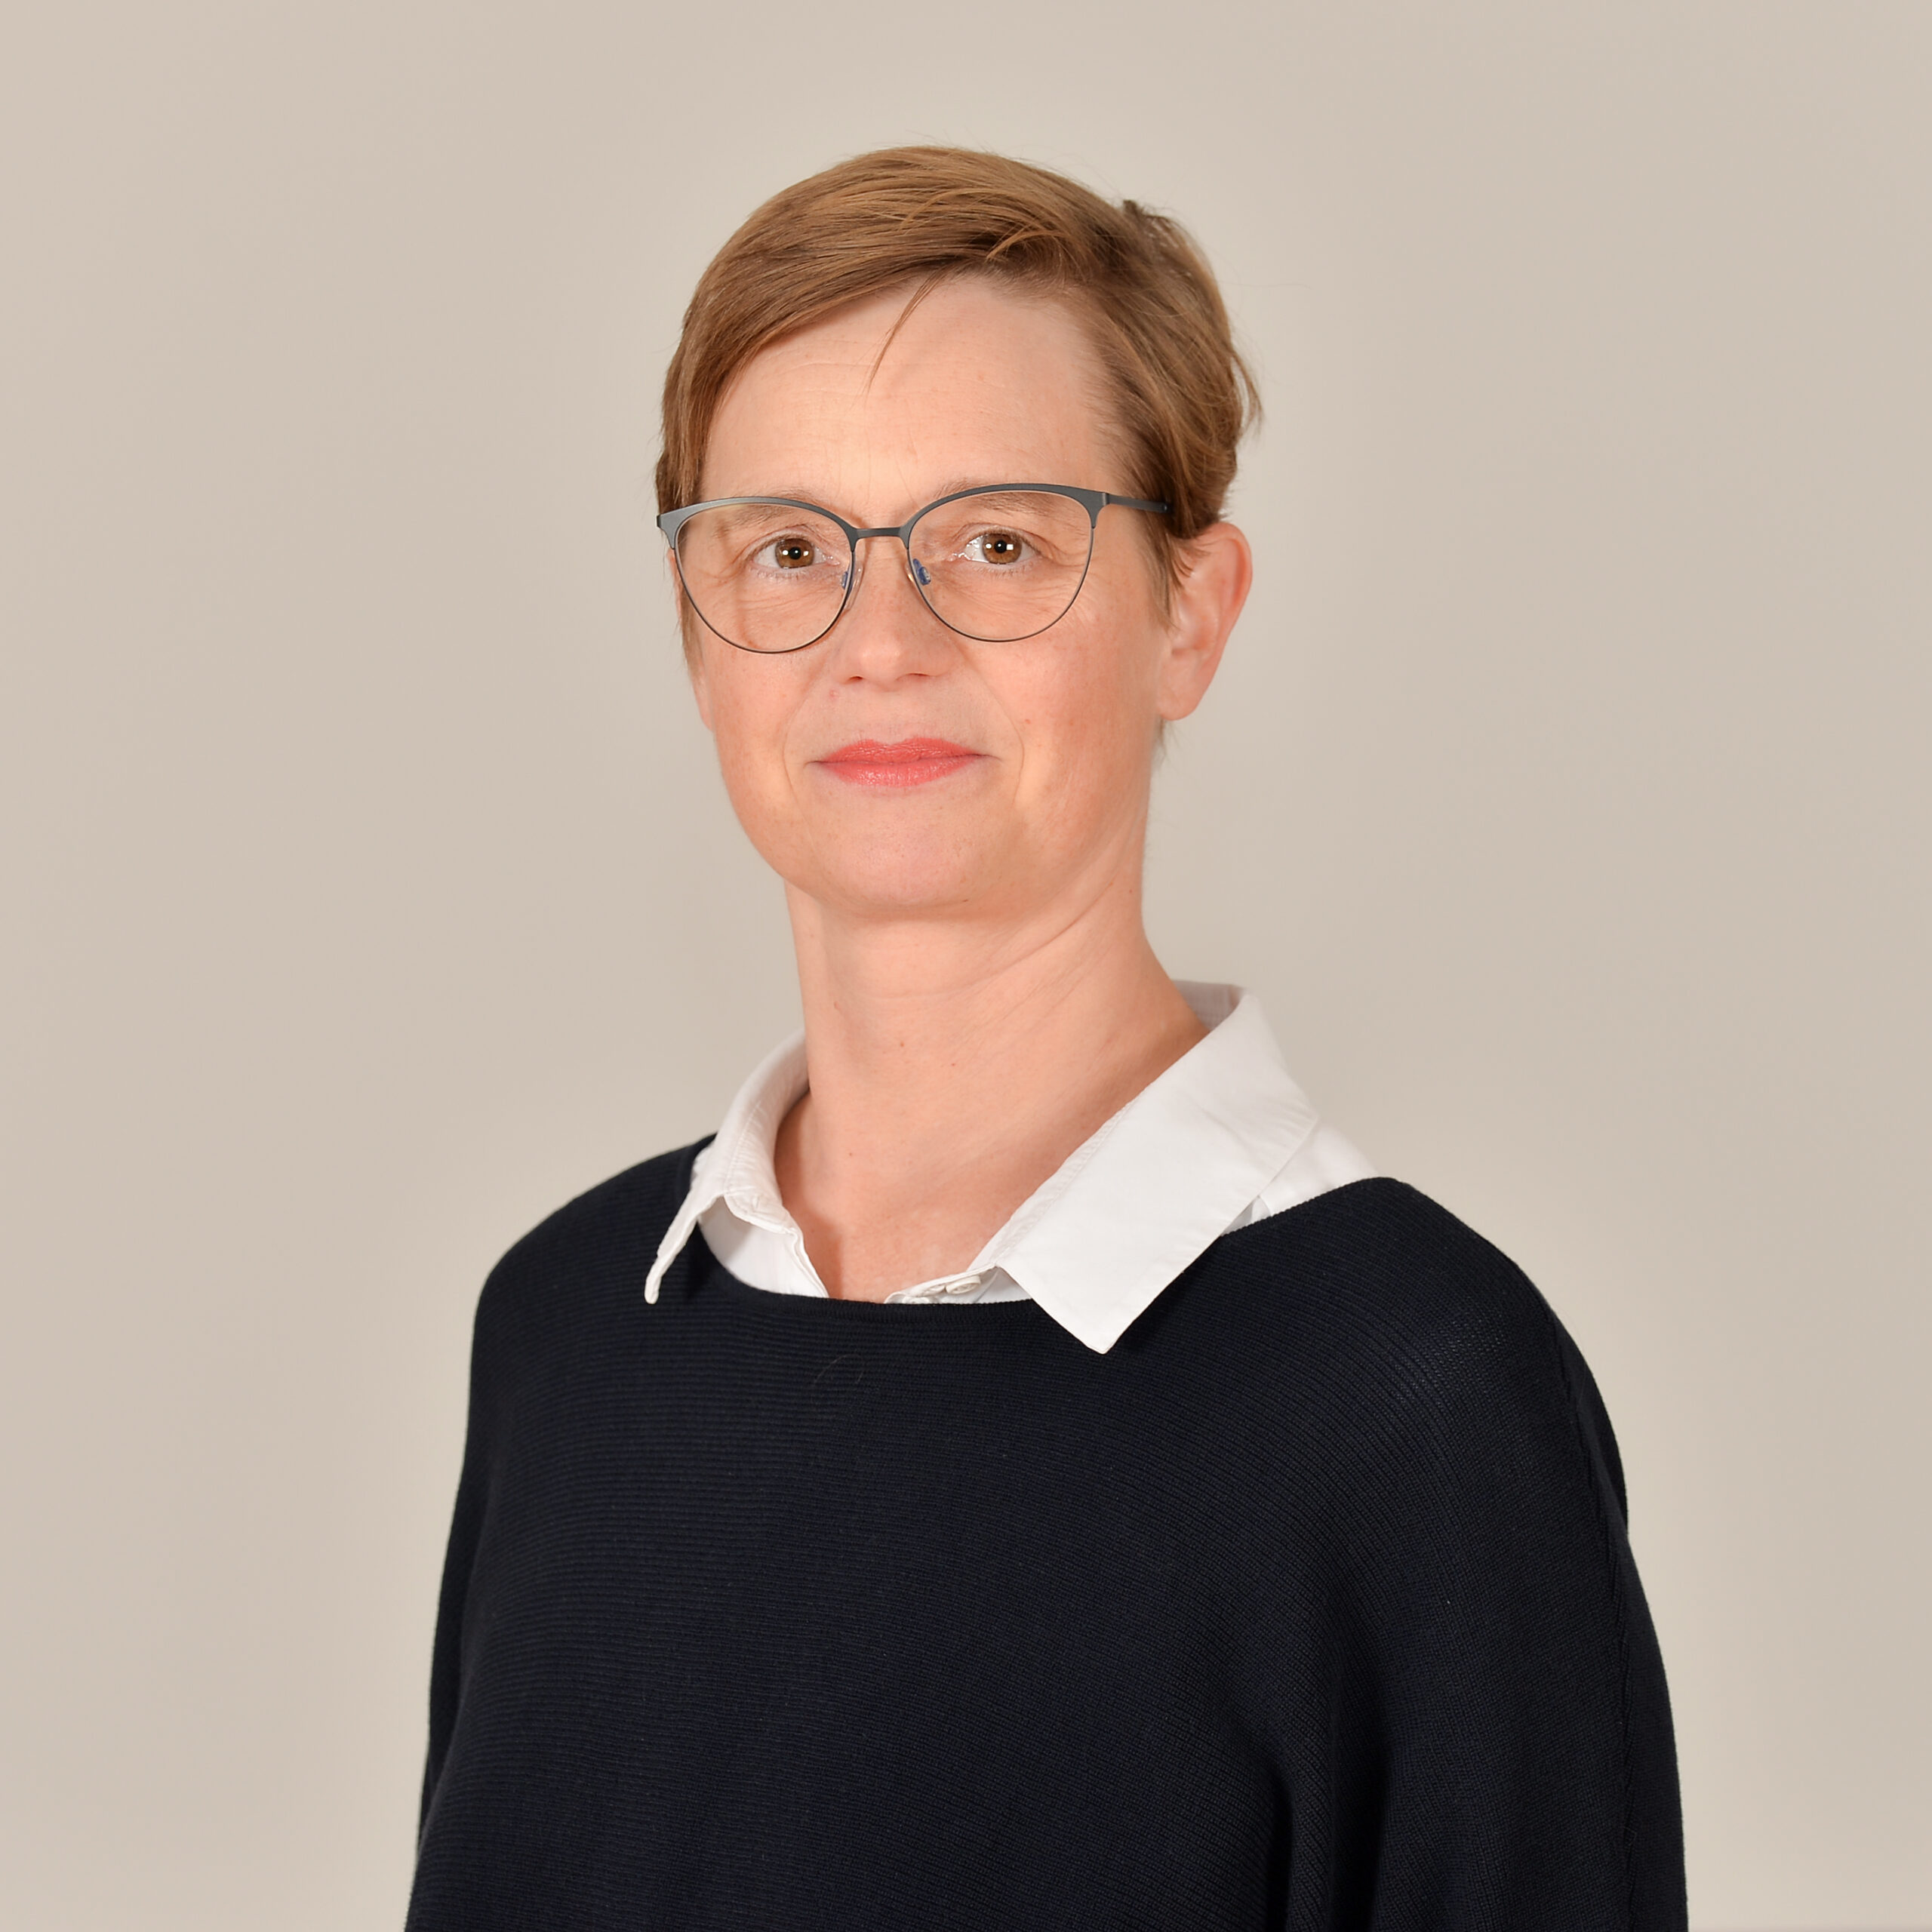 Profilbild von Dr. Marnie Schlüter in weißer Bluse und schwarzem Pullover.